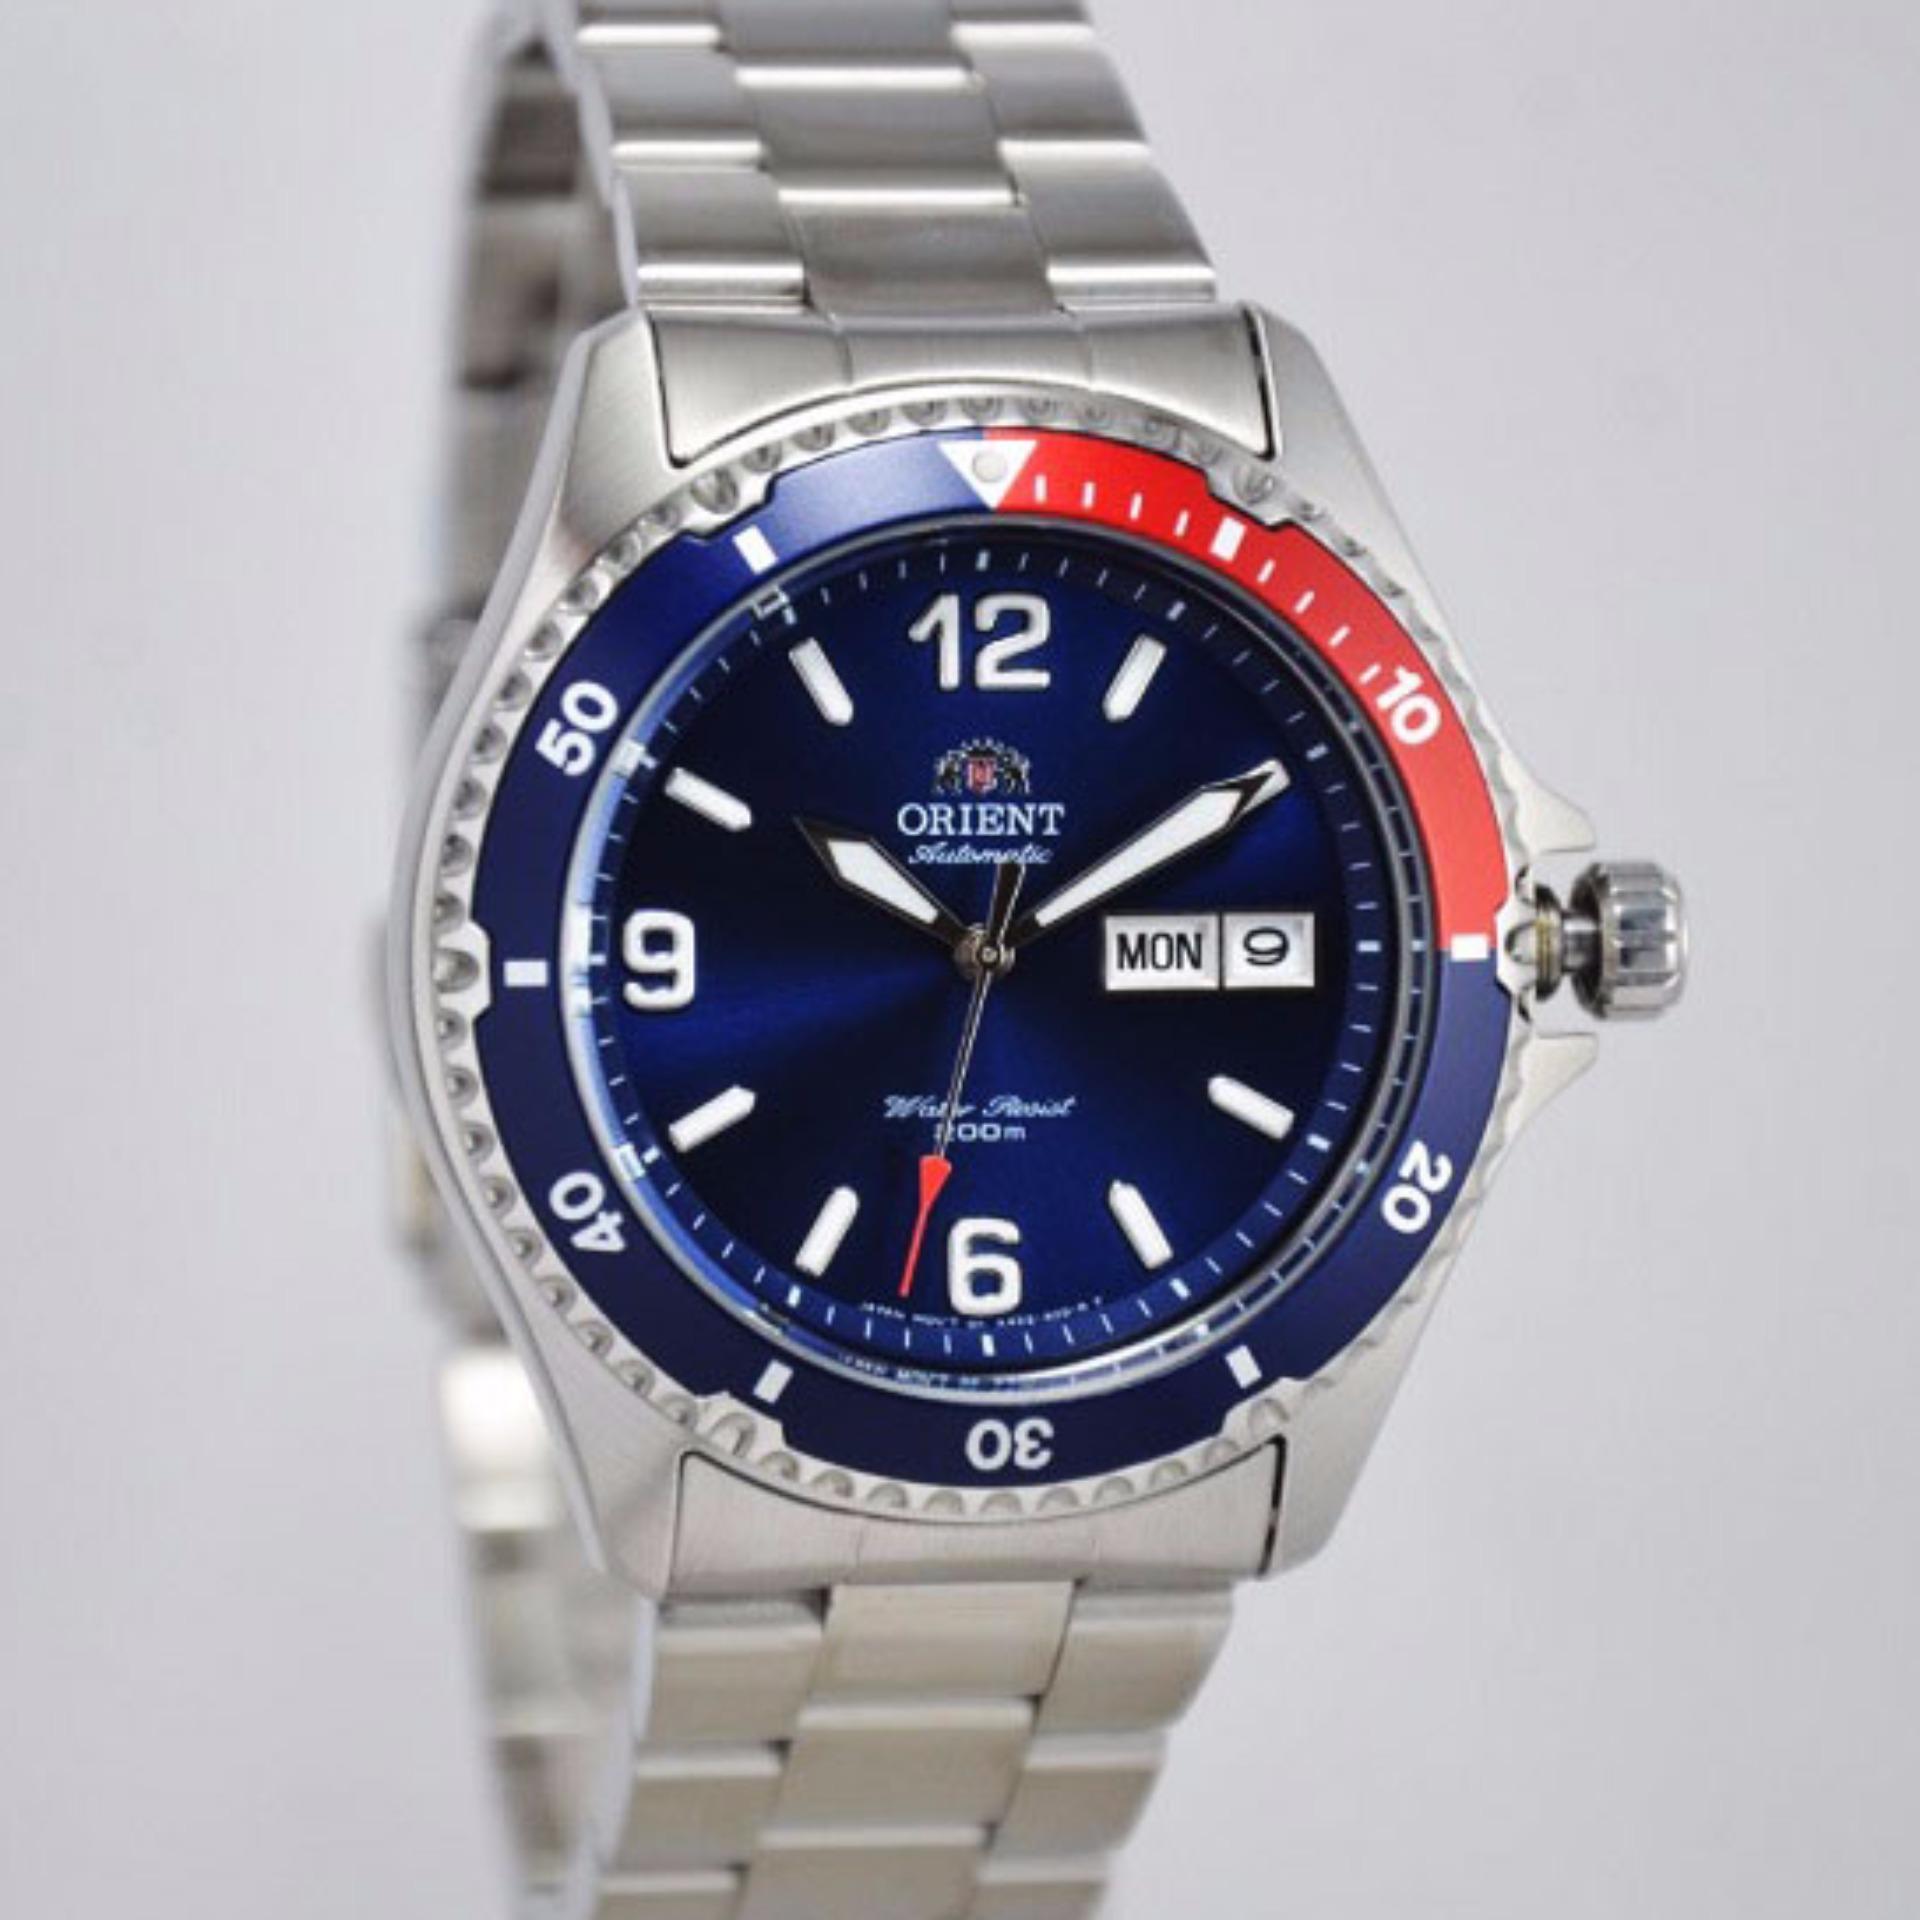 Đồng hồ Orient Mako 2 SAA02009D3 Pepsi